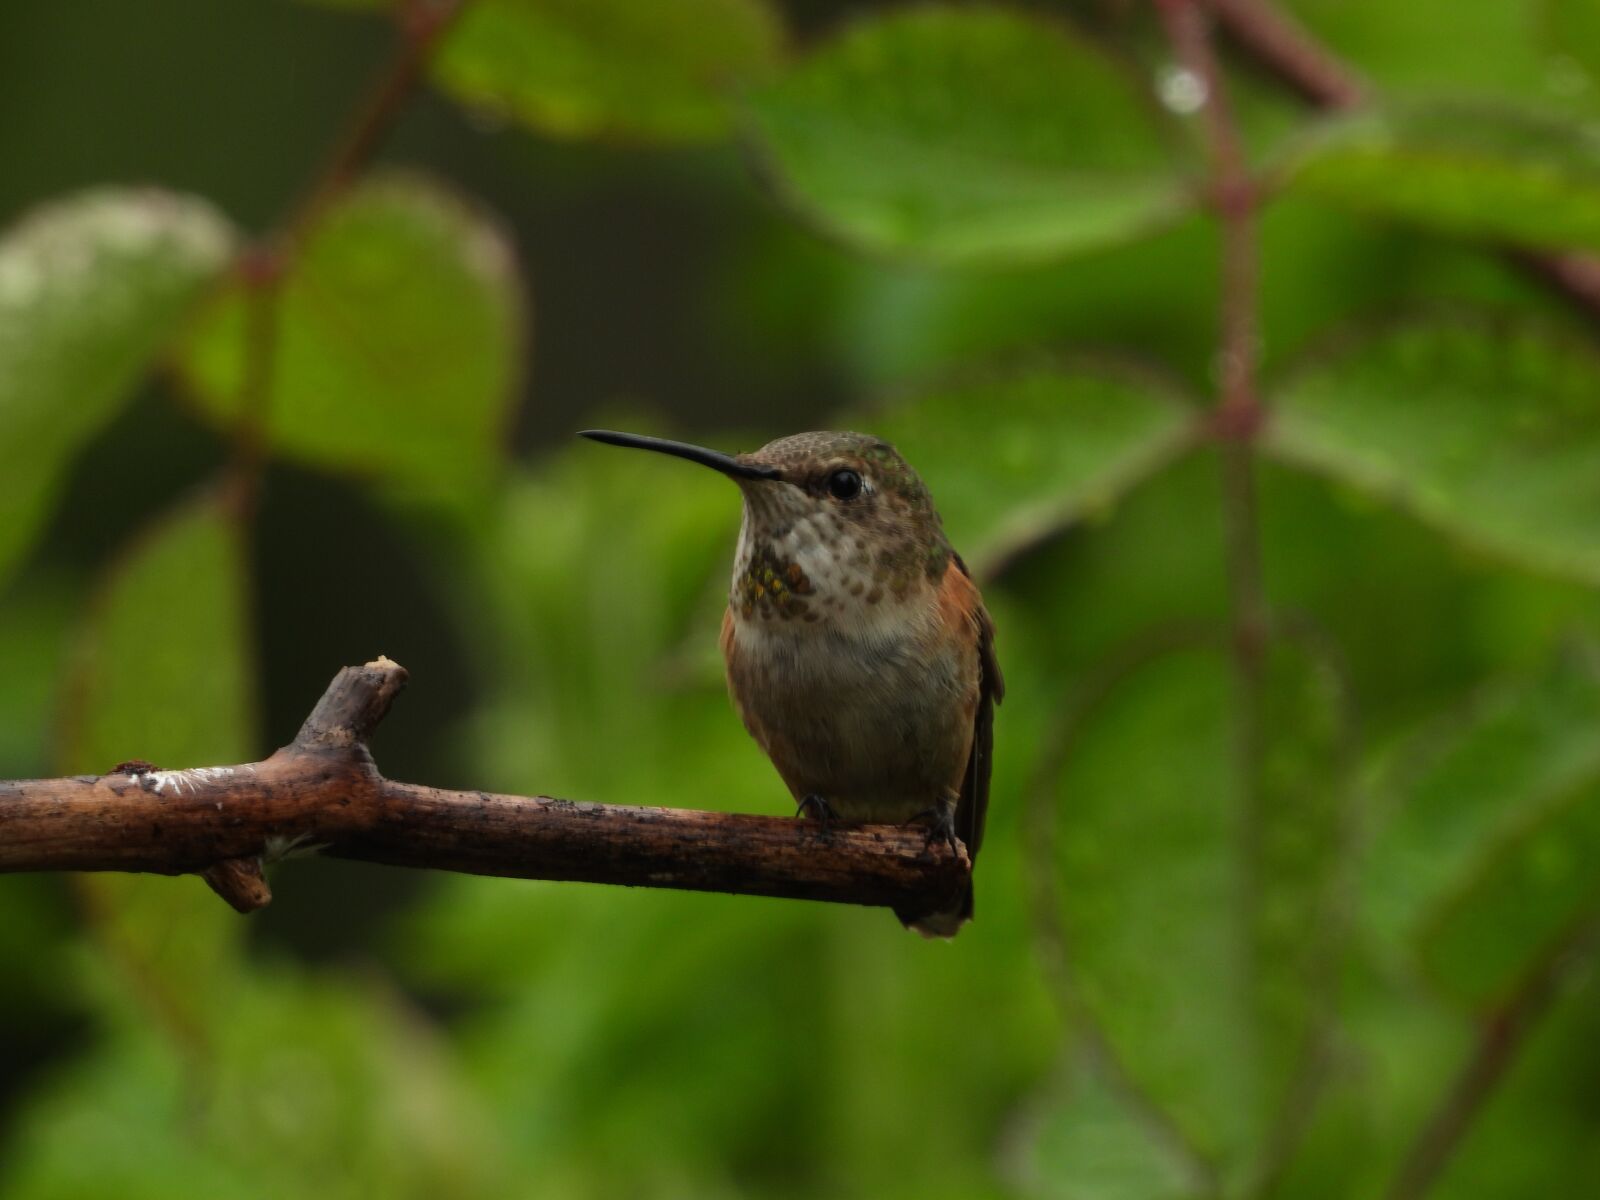 Nikon Coolpix P1000 sample photo. Hummingbird, wild, nature photography